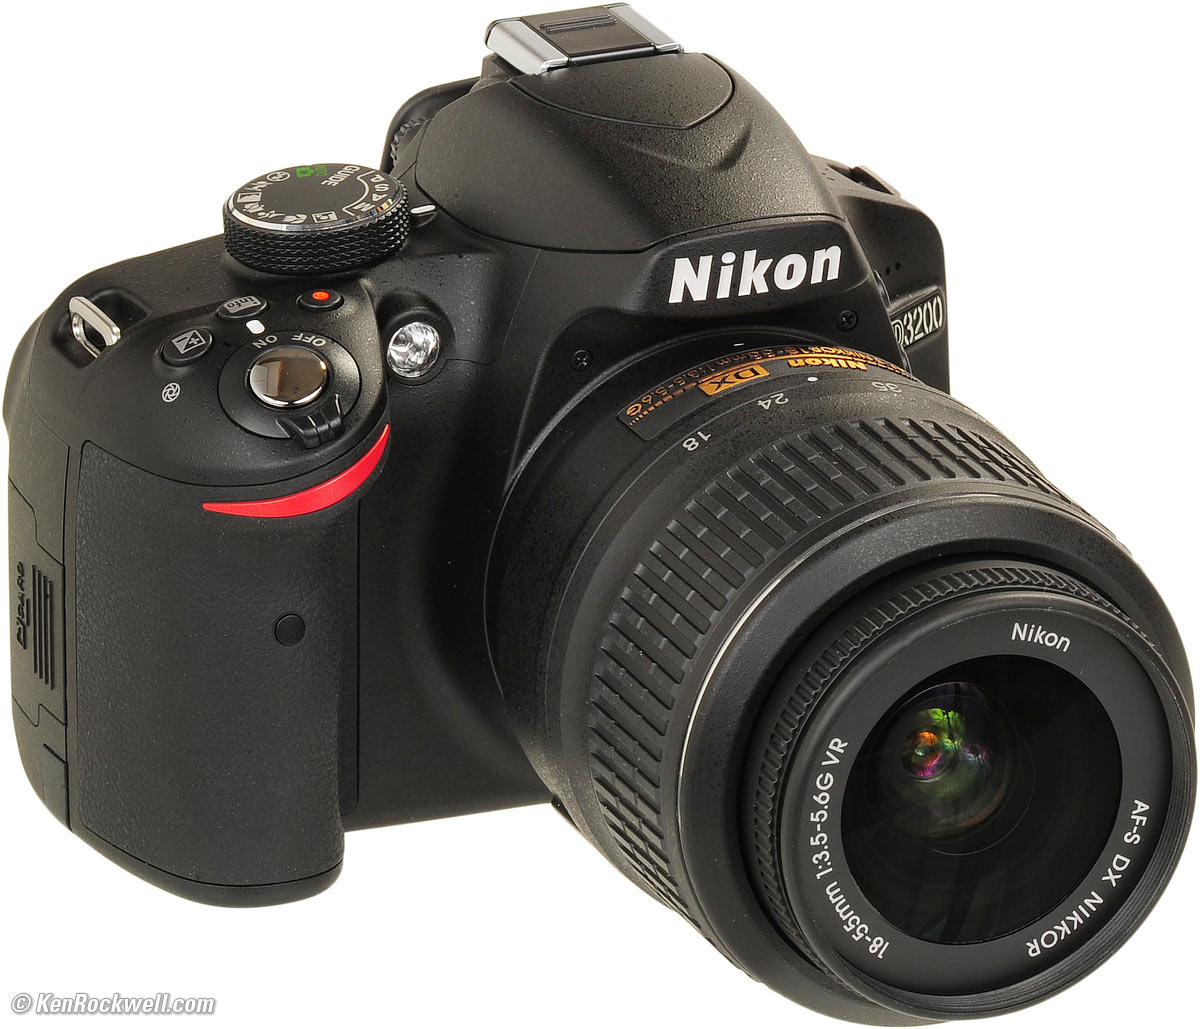 ありません Nikon D3200 BLACK ありません